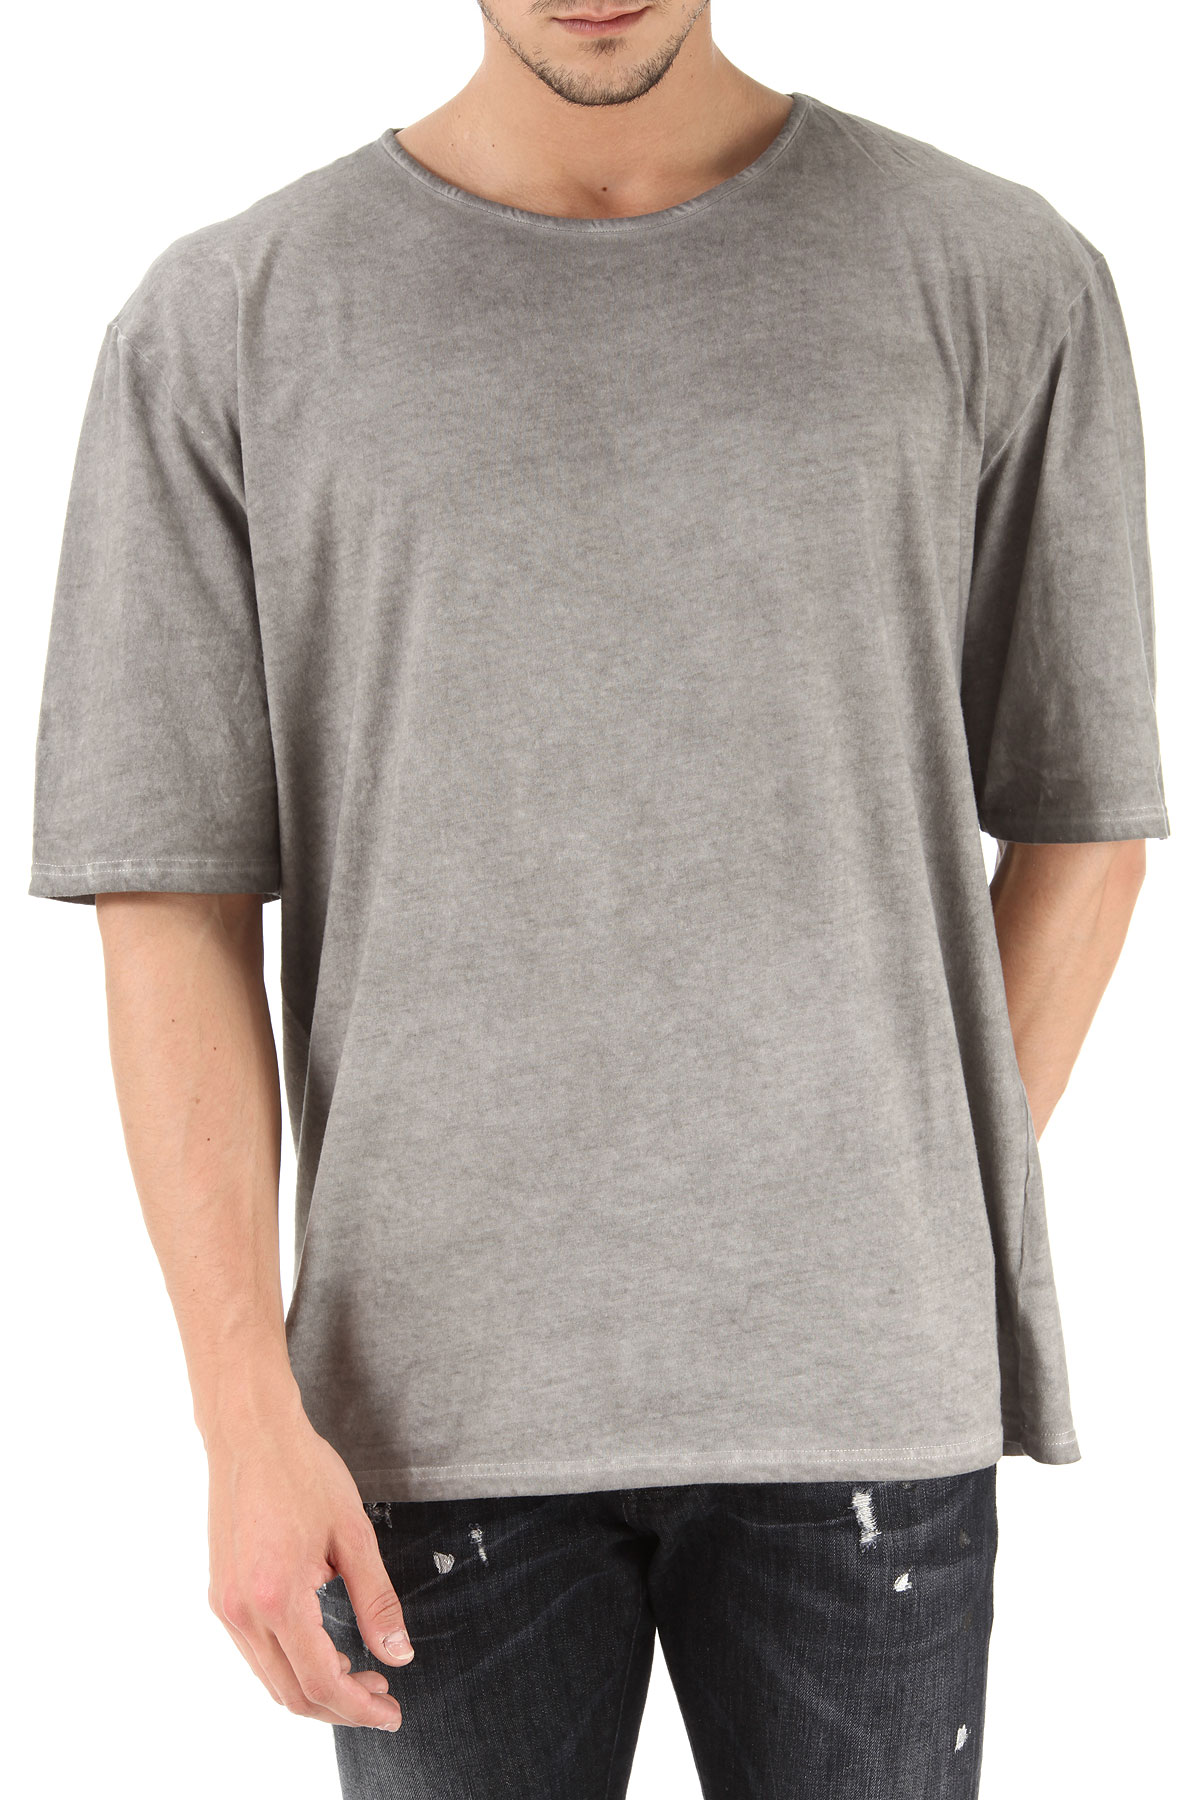 Unconditional T-shirt Homme Outlet, Gris, Coton, 2017, L S XL